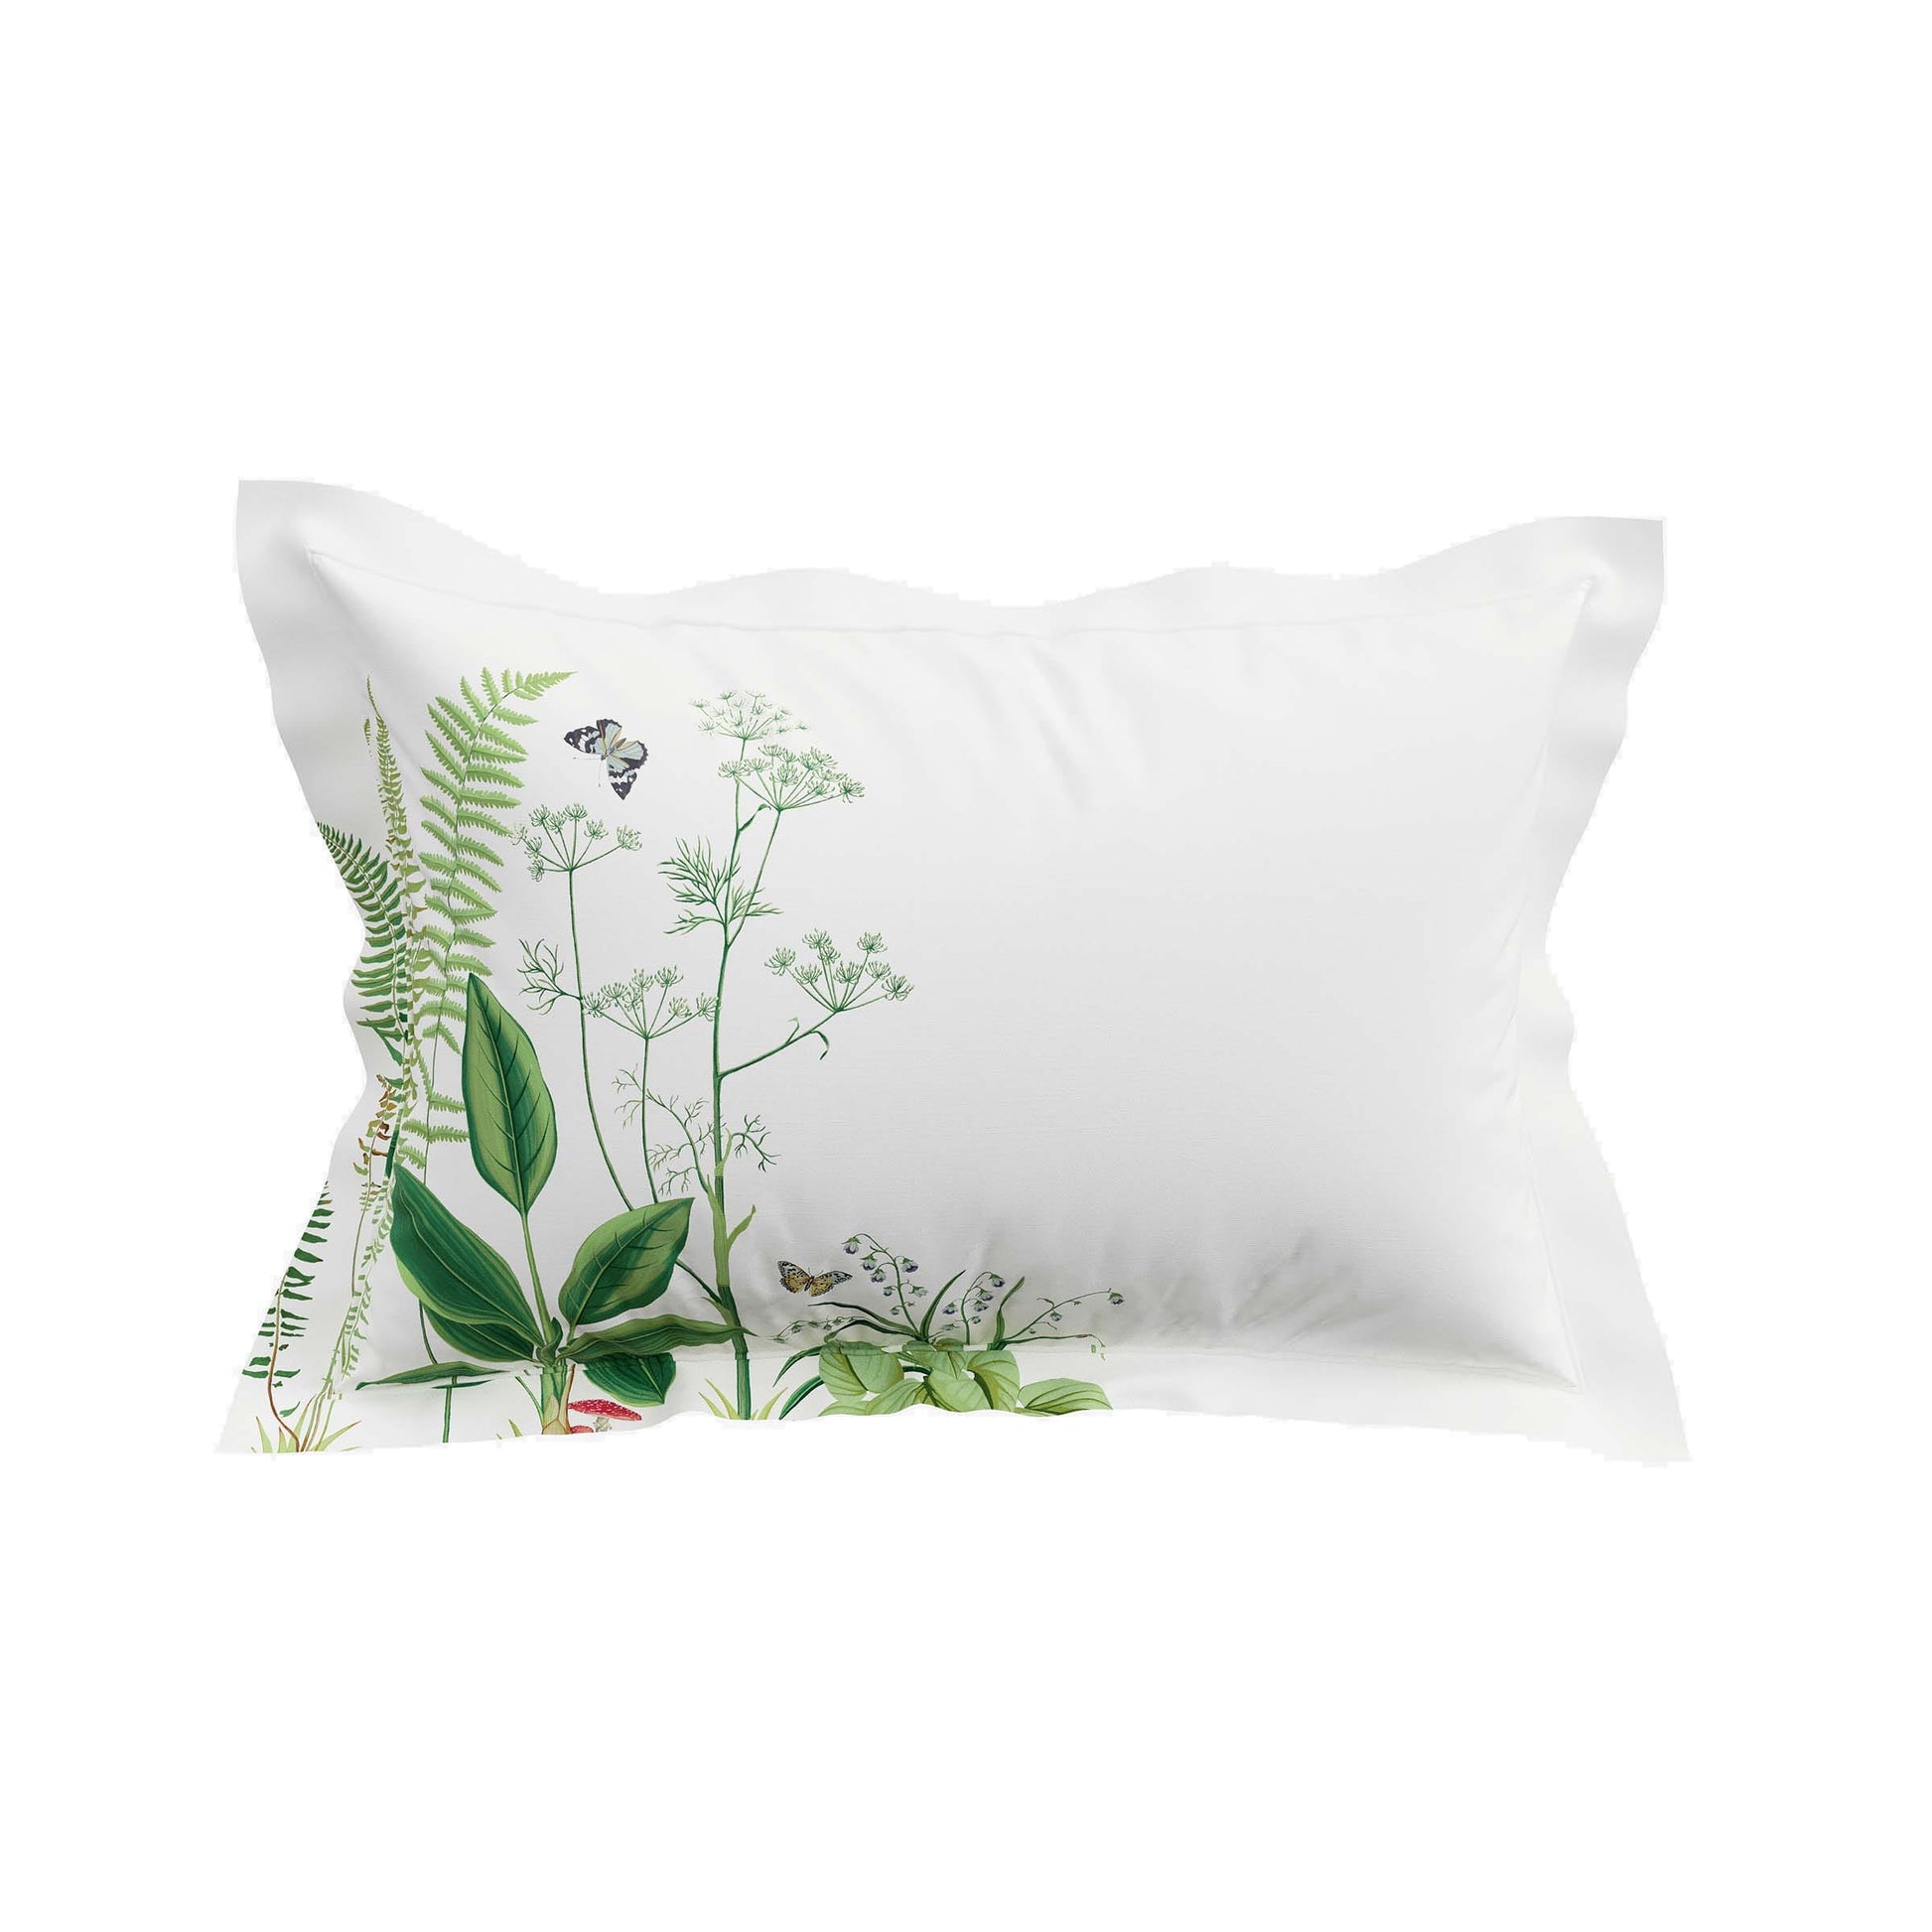 Sanderson Sycamore & Oak duvet cover set botanical green on white bed